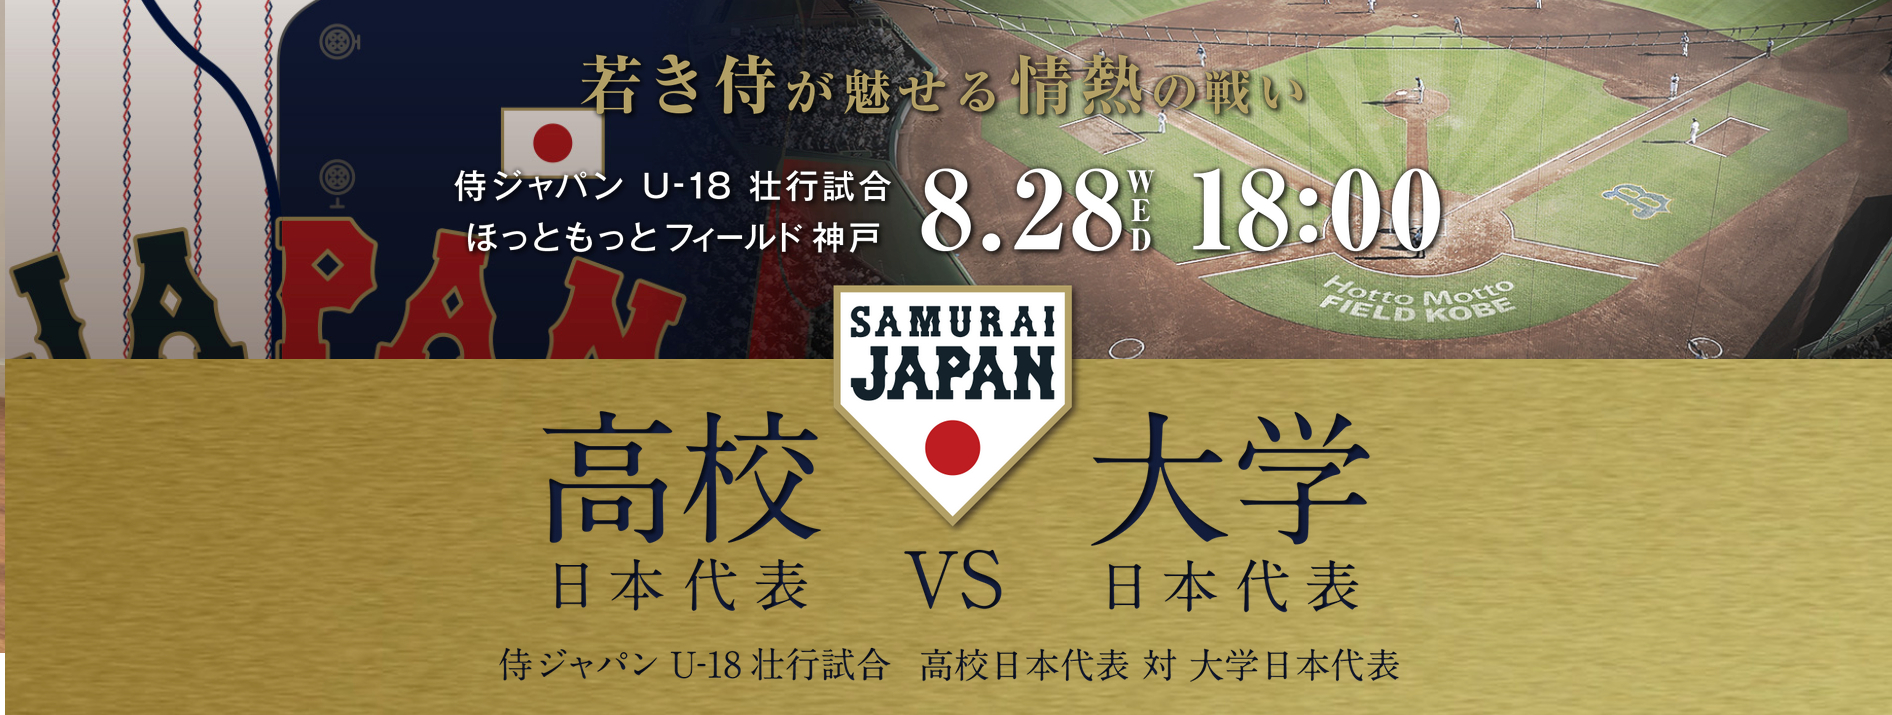 侍ジャパンU-18壮行試合 高校日本代表 対 大学日本代表